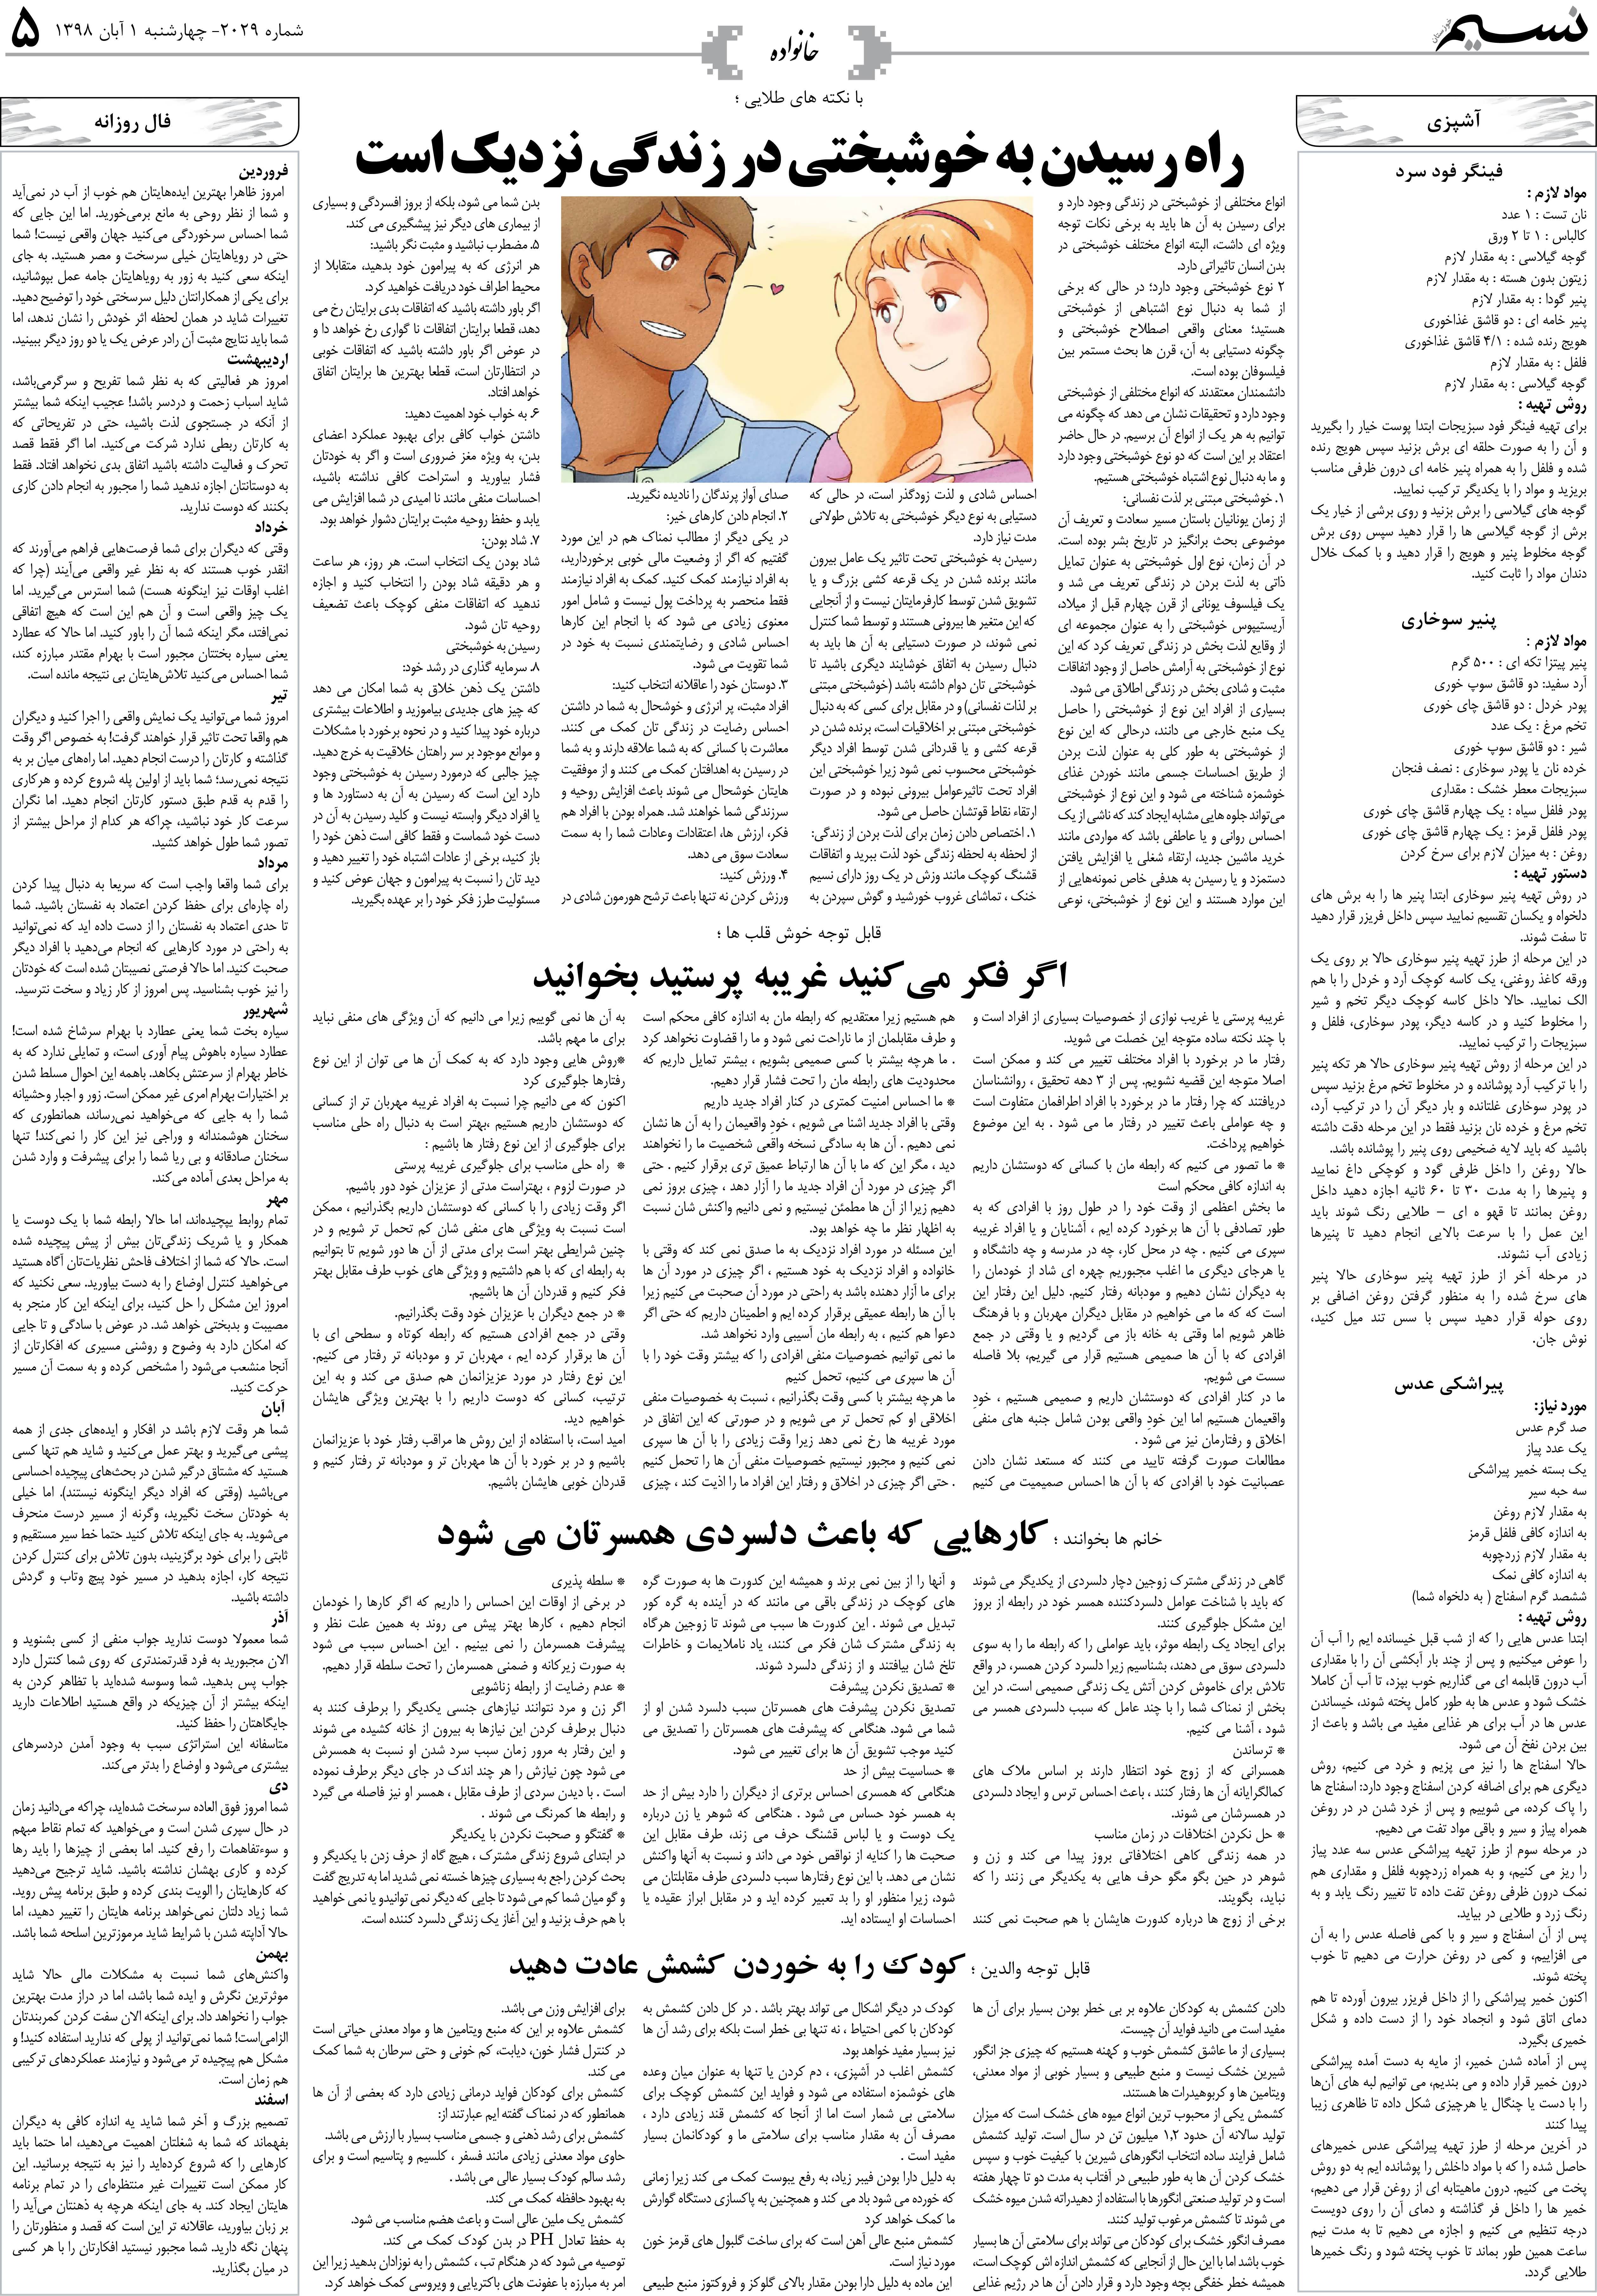 صفحه خانواده روزنامه نسیم شماره 2029